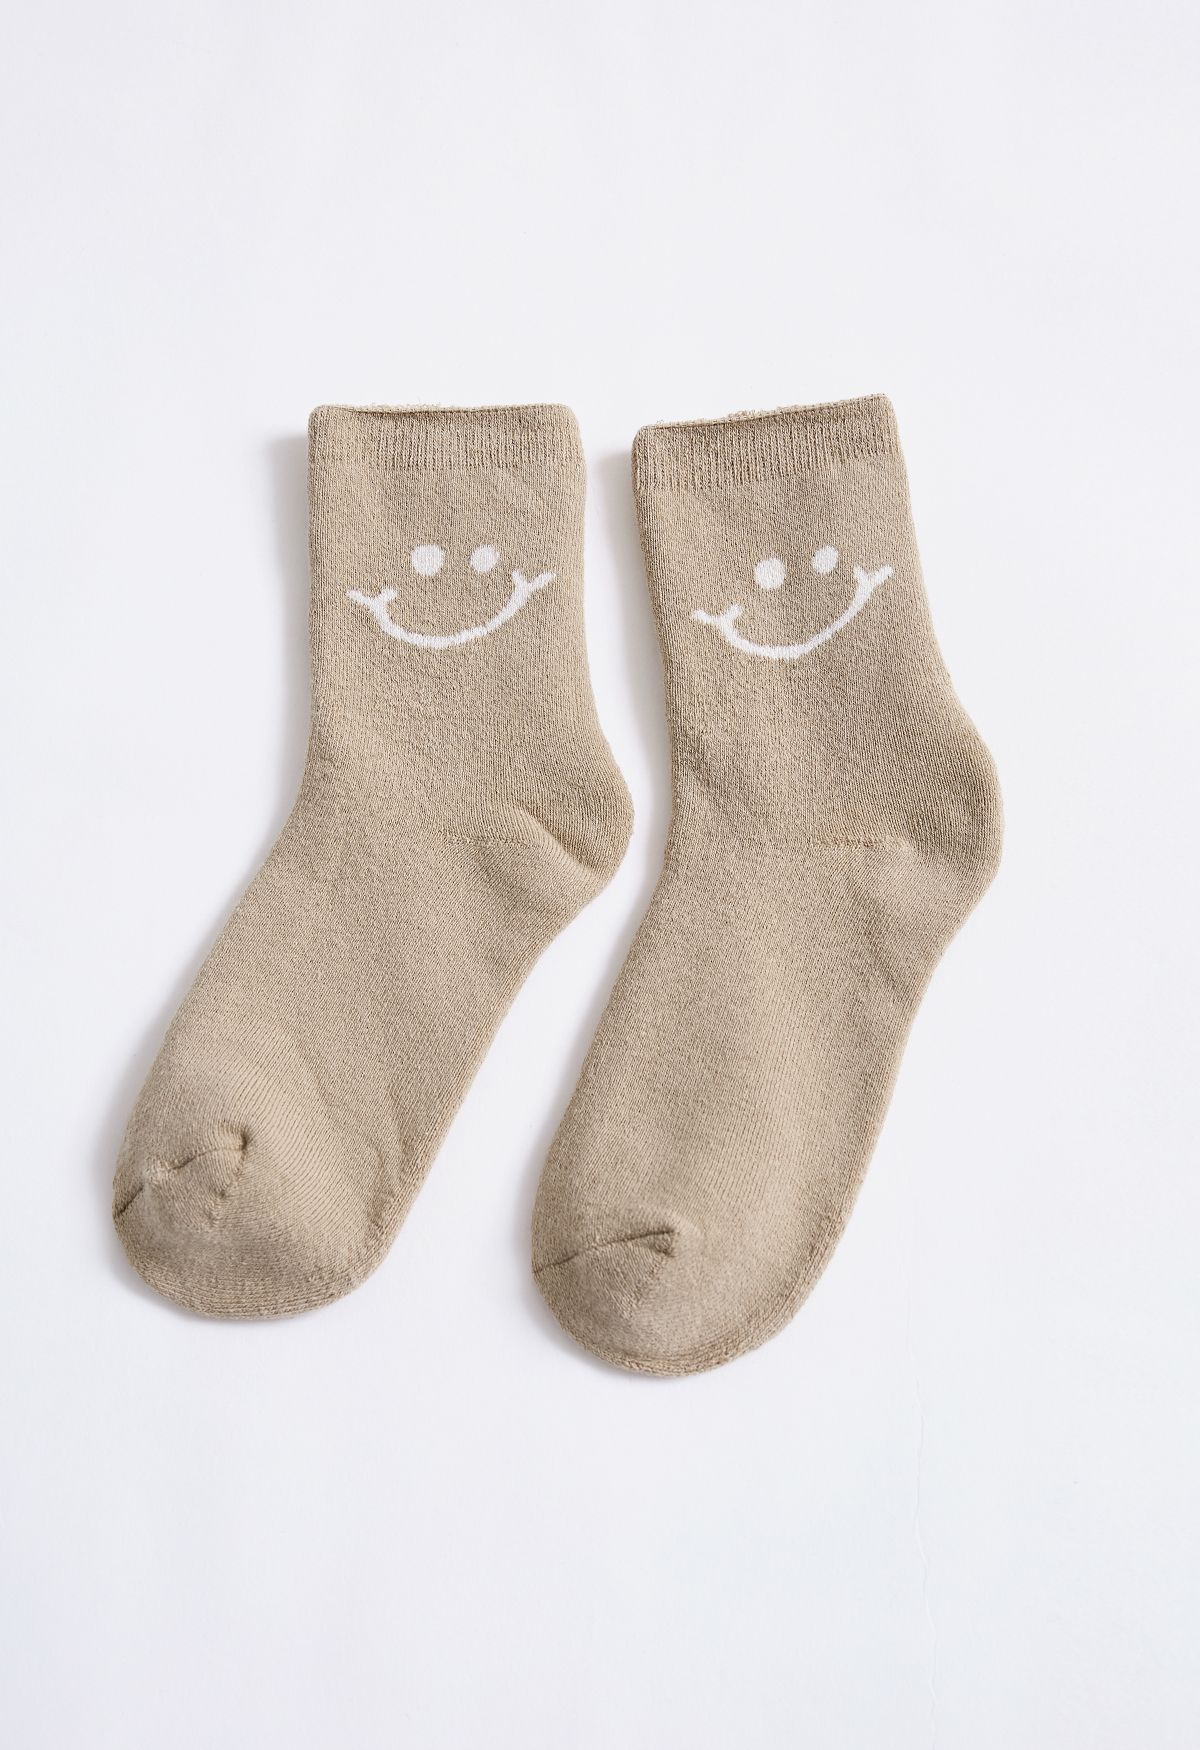 Calcetines cómodos con cara sonriente